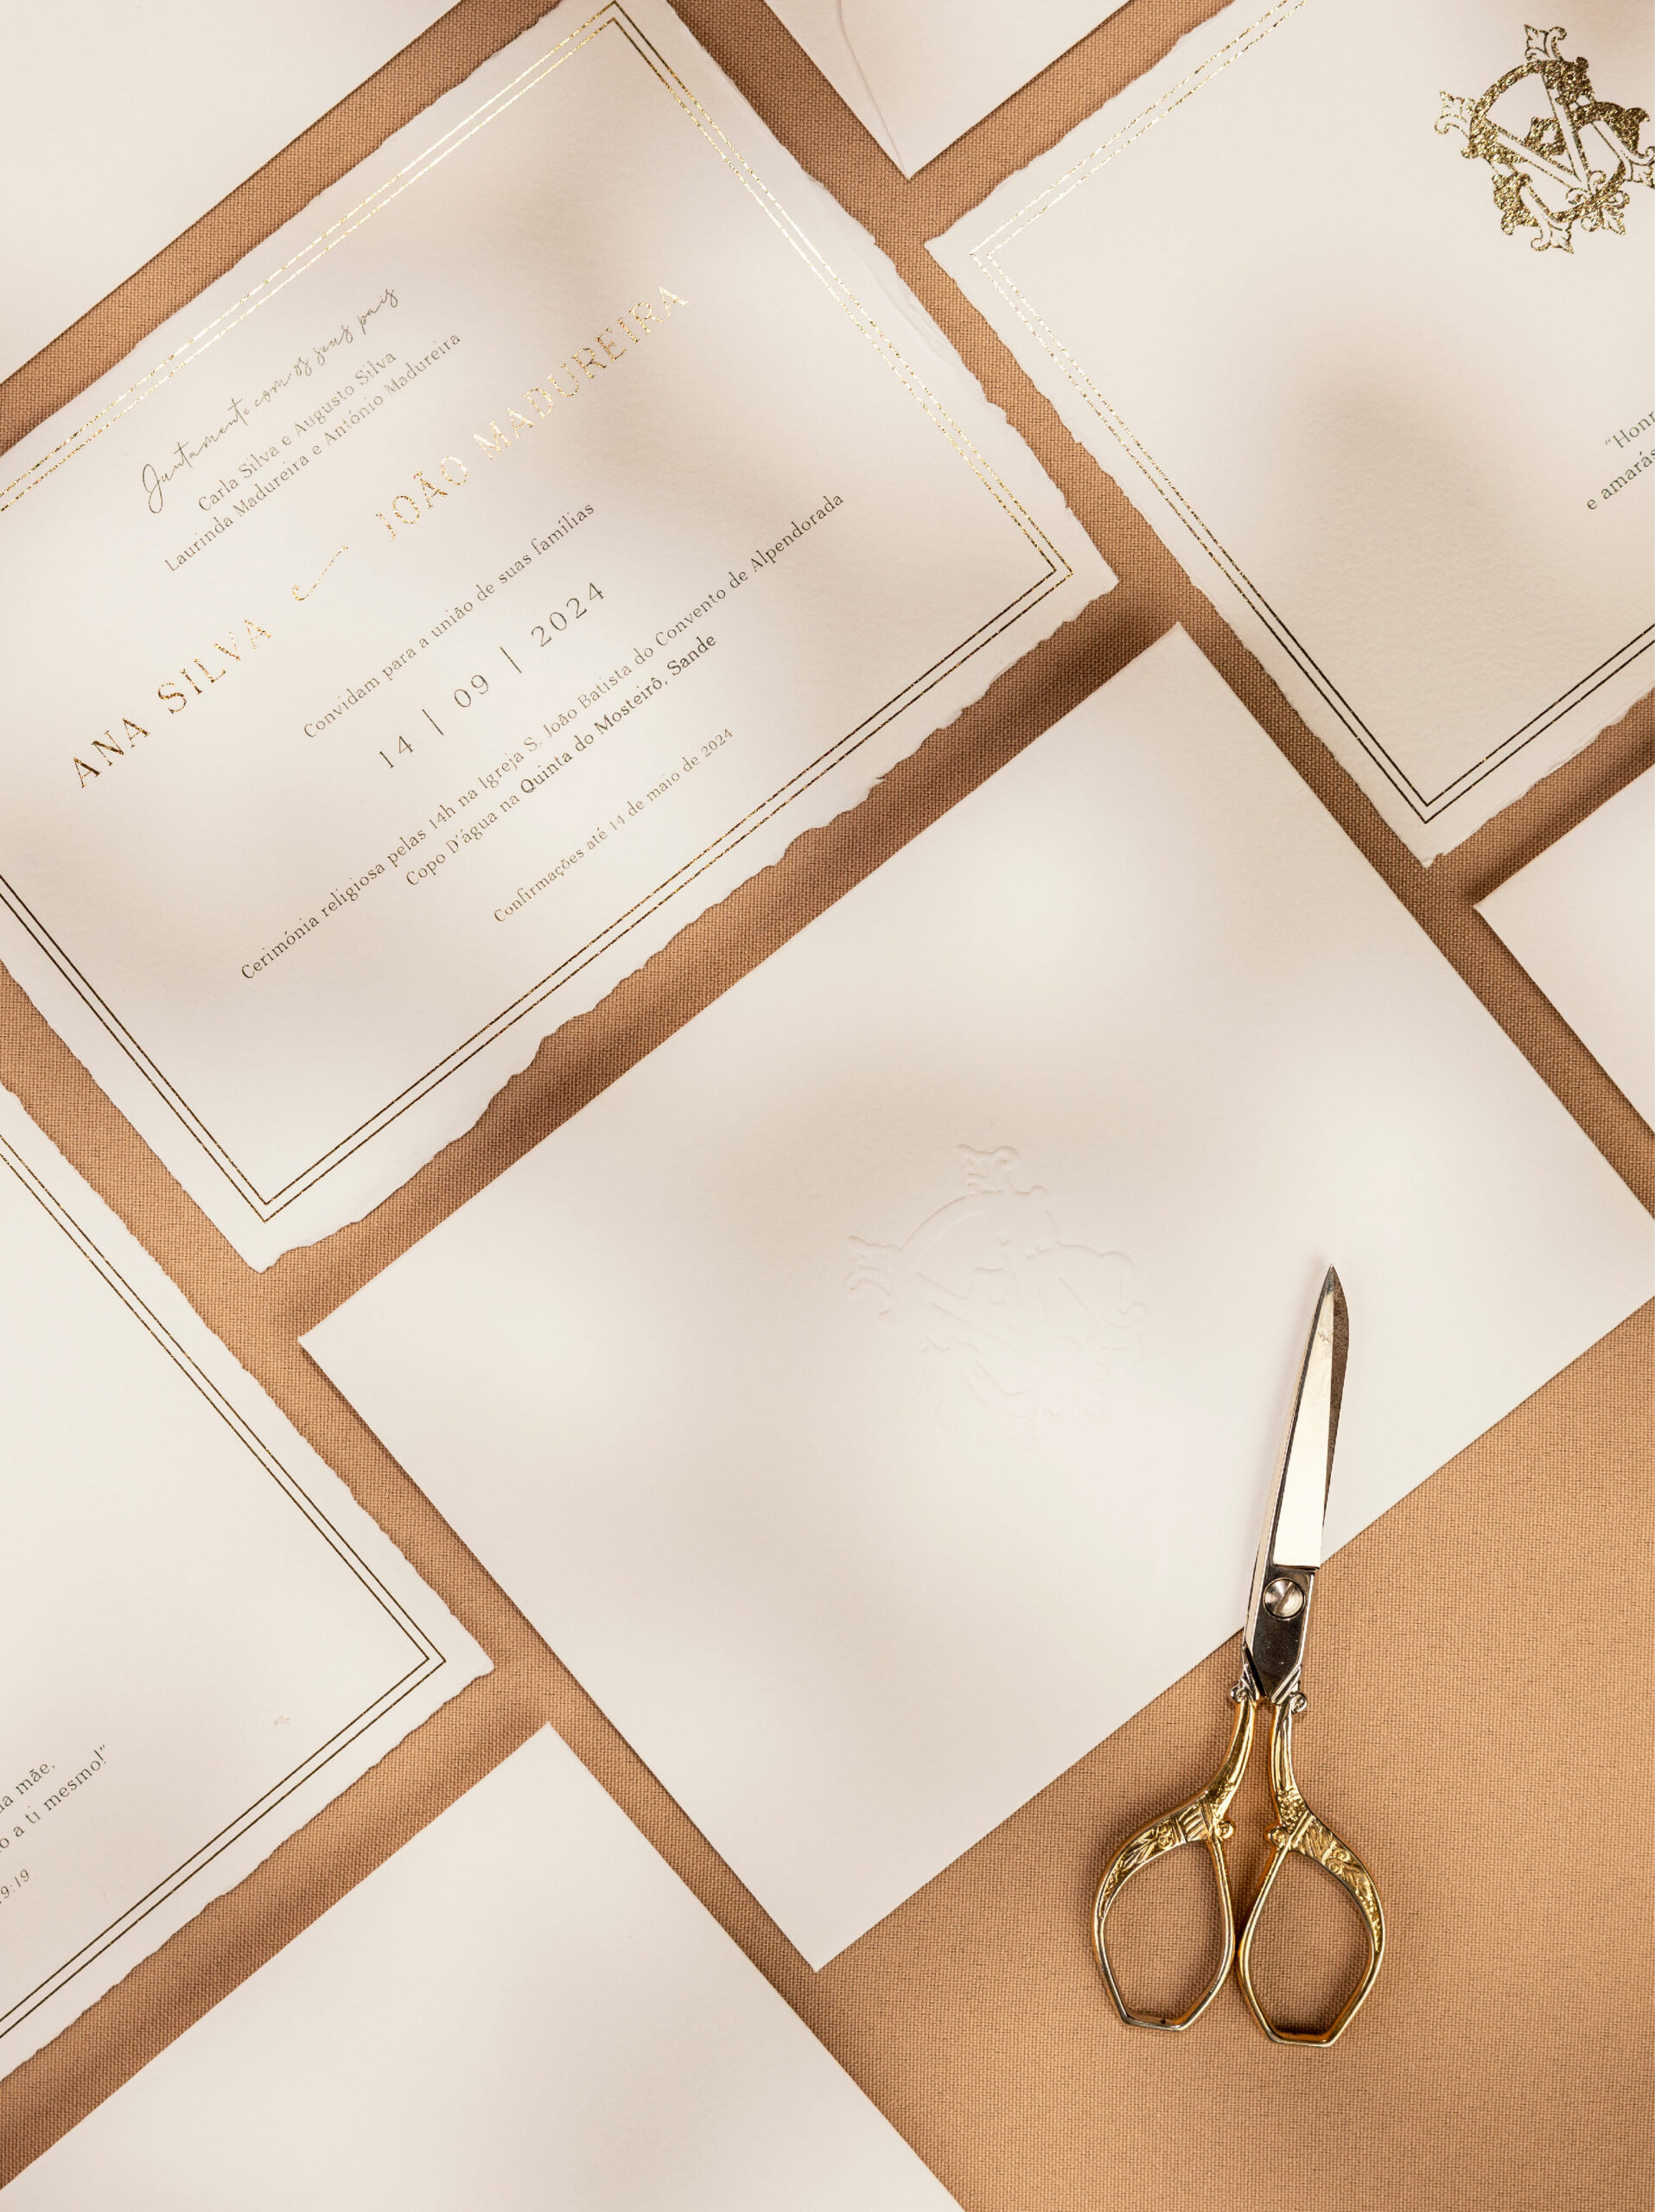 Convite de Casamento em papel com efeito rasgado com detalhes dourados